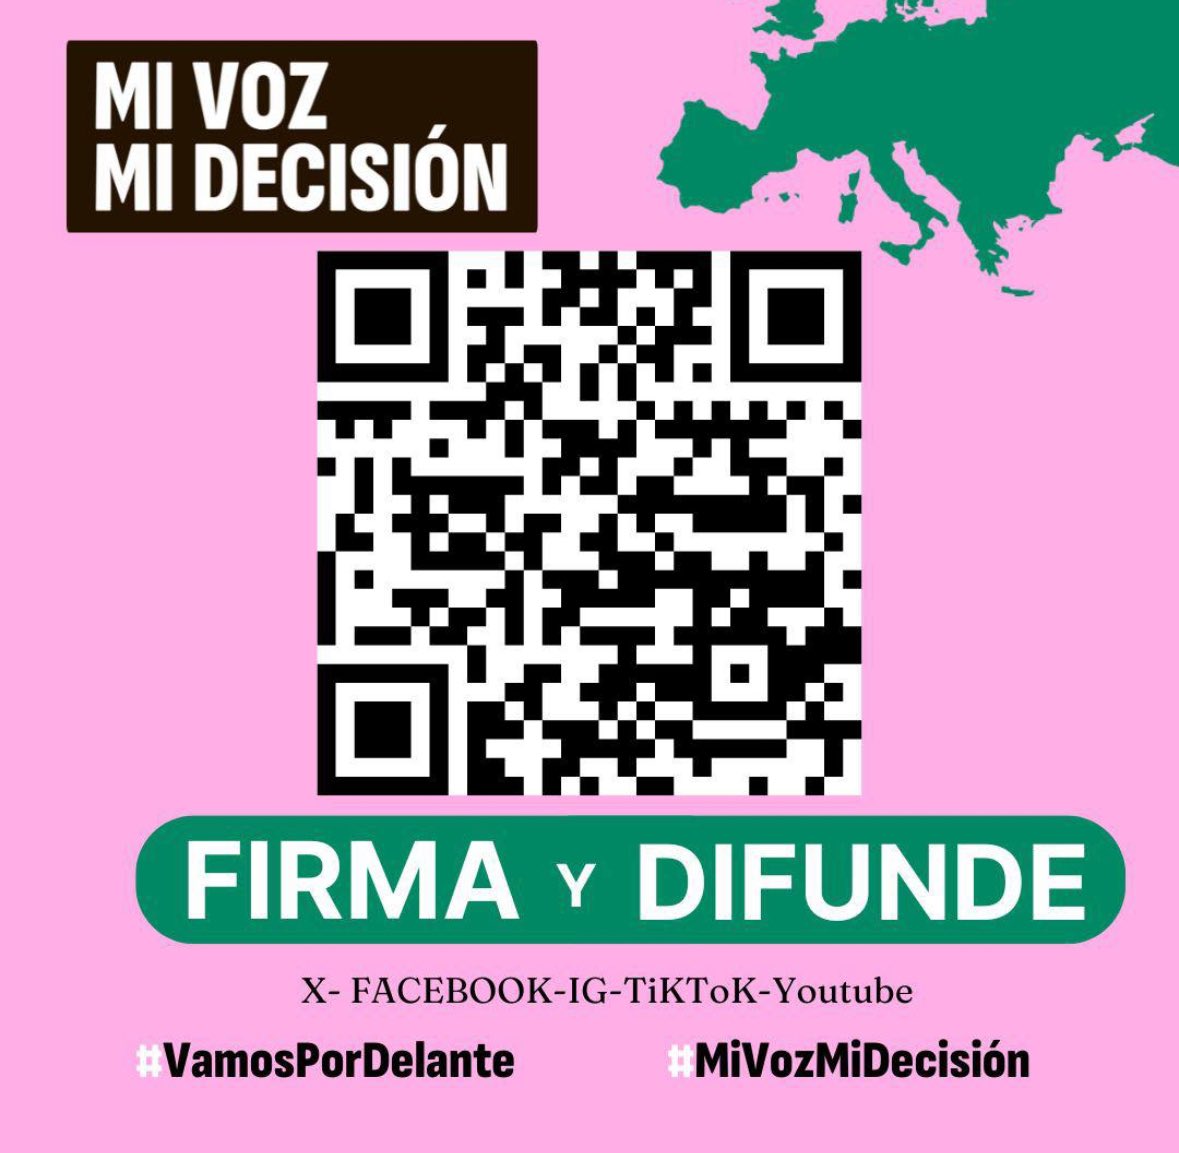 💜 Desde Podemos nos adherimos a la campaña #MiVozMiDecisión. 🤰 Para garantizar el derecho al aborto libre, seguro y gratuito para todas las mujeres en la Unión Europea. ⚠️ Necesitamos alcanzar 1 millón de firmas antes del 5 de junio en bit.ly/firmamivozmide…